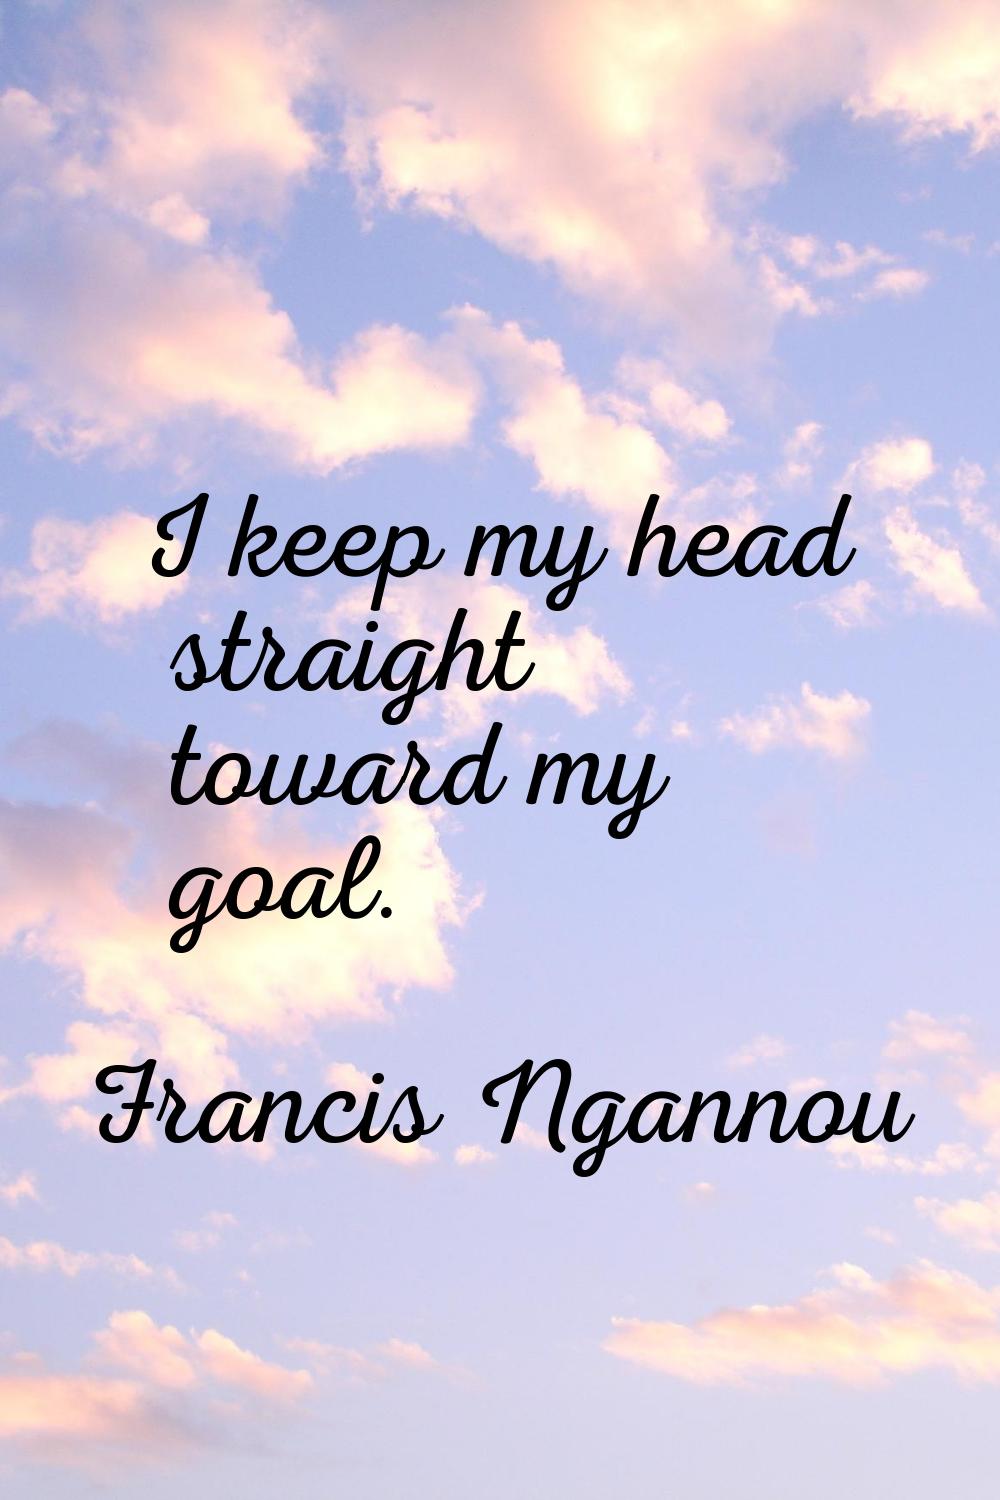 I keep my head straight toward my goal.